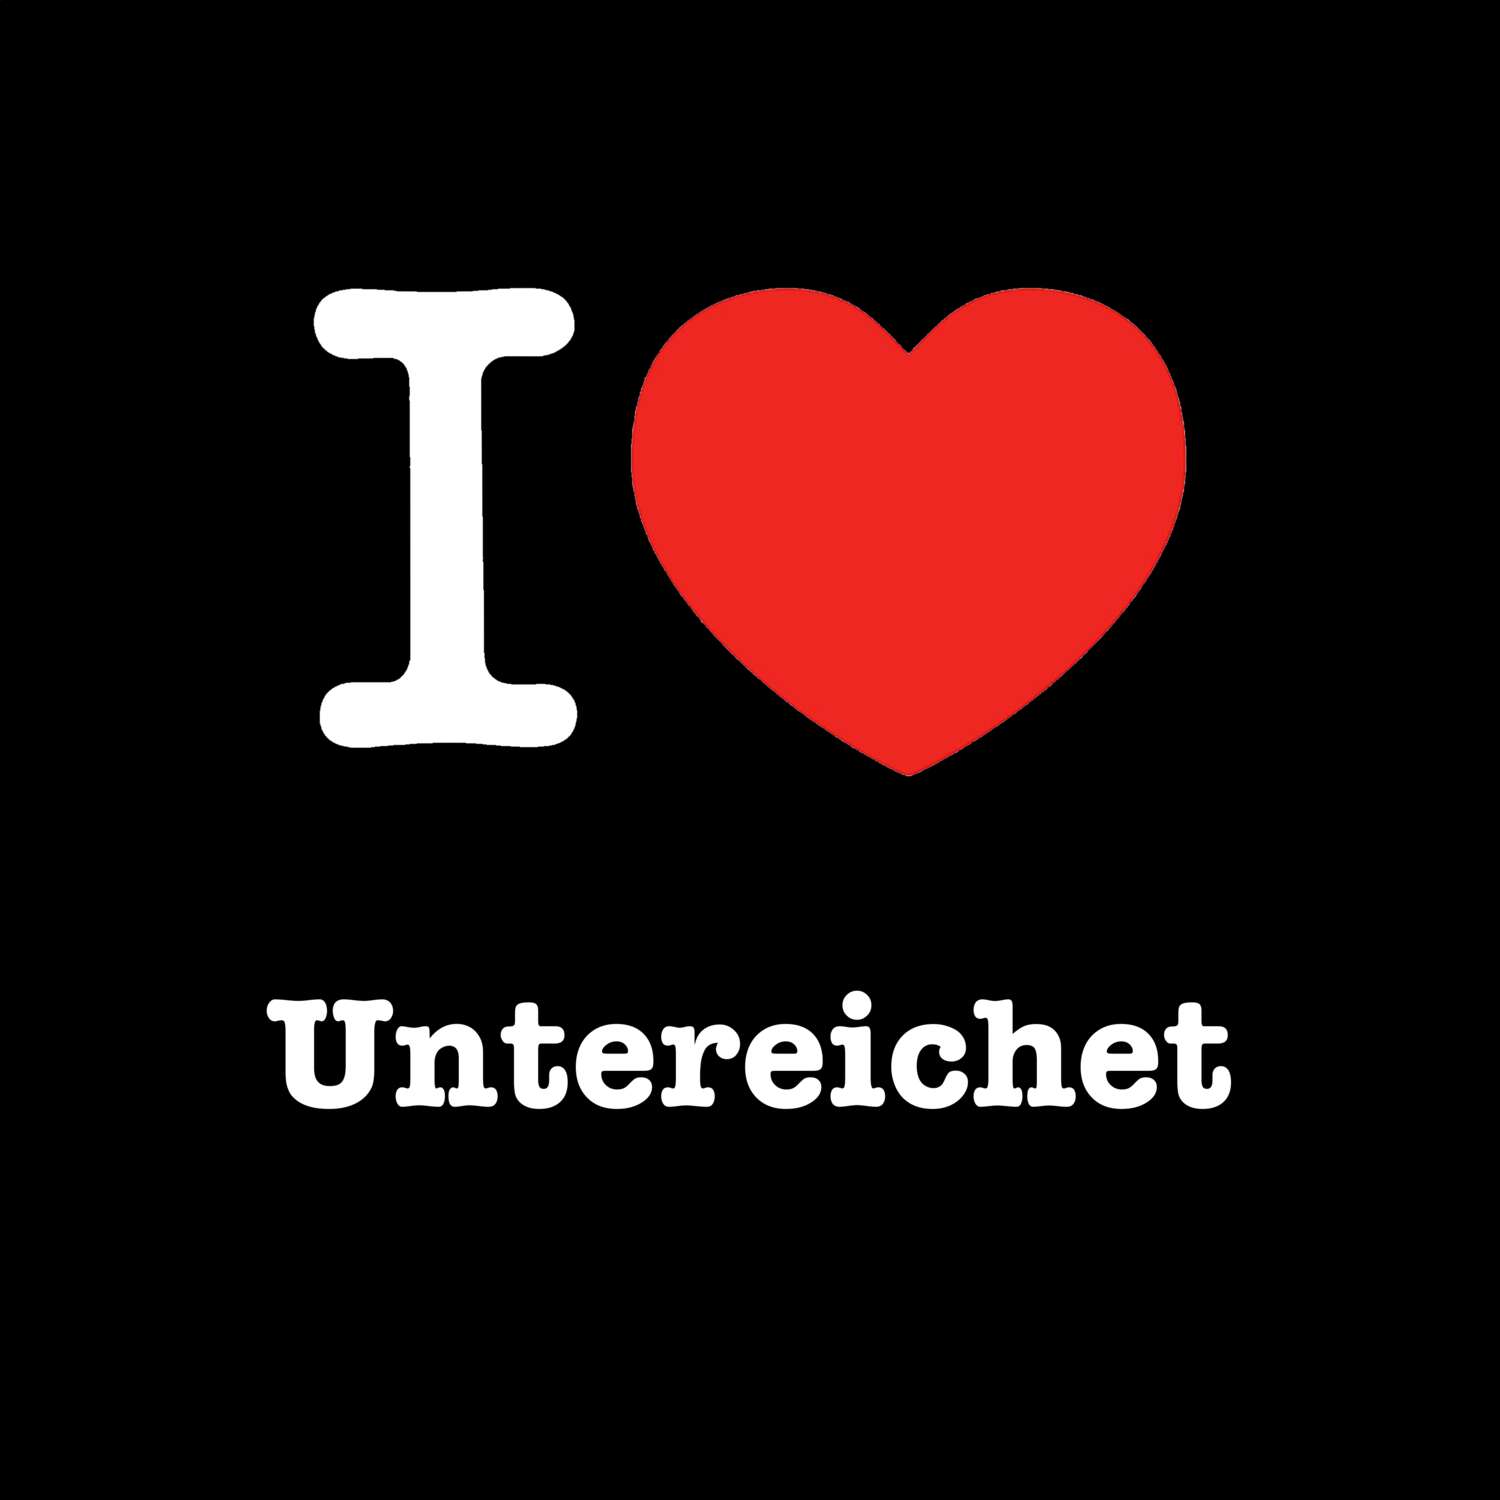 Untereichet T-Shirt »I love«